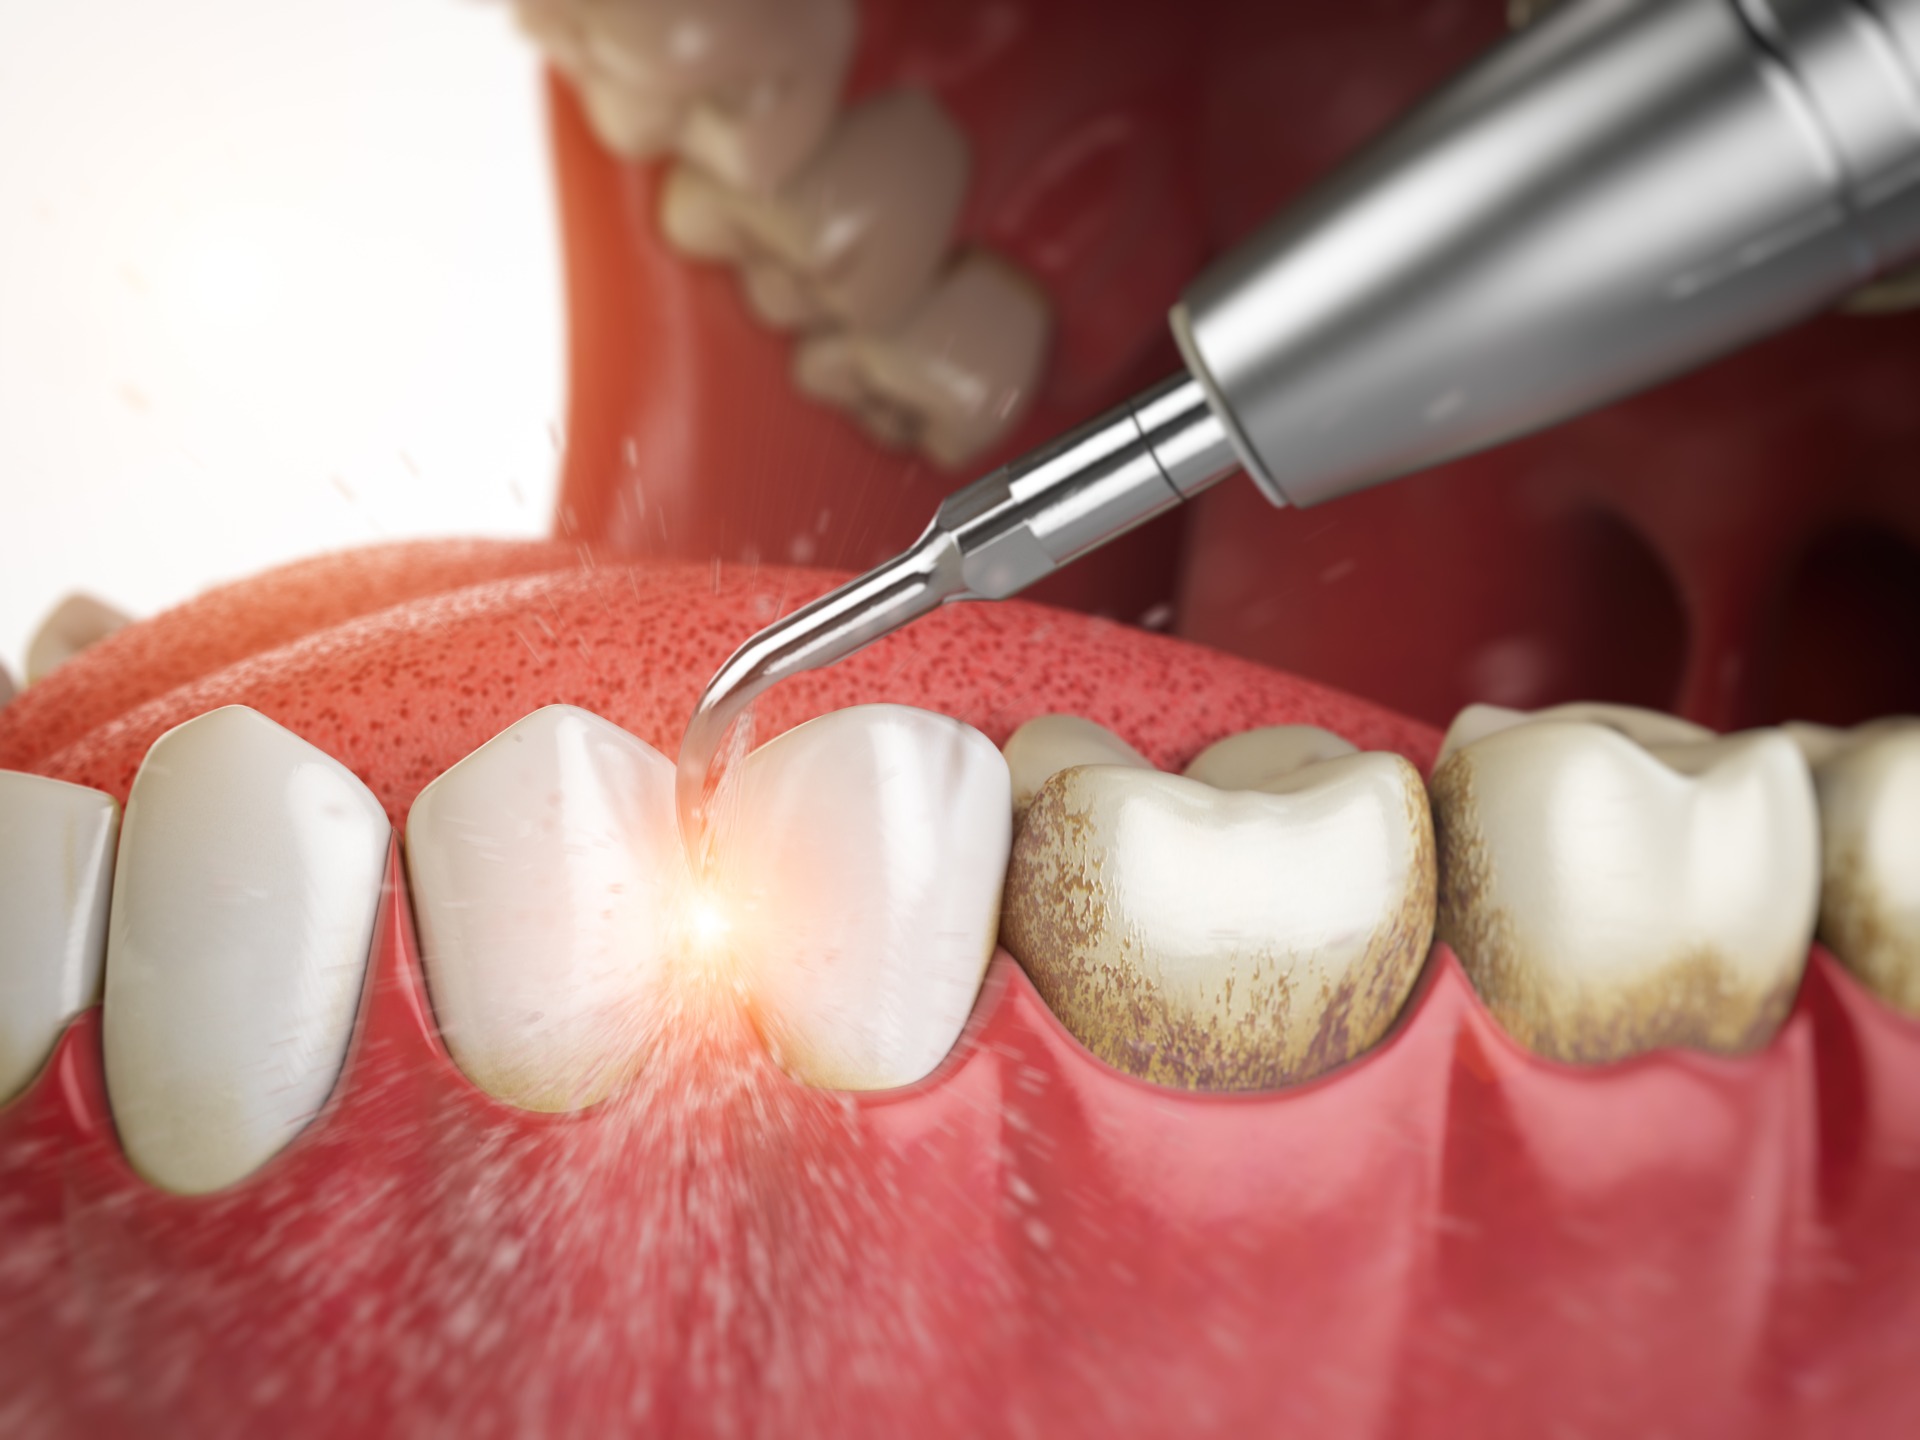 Чистка зубов вредно. Профгигиена (ультразвук + Air-Flow). Пришеечный зубной камень. Поддесневой зубной налет. Поддесневые отложения зубной камень.